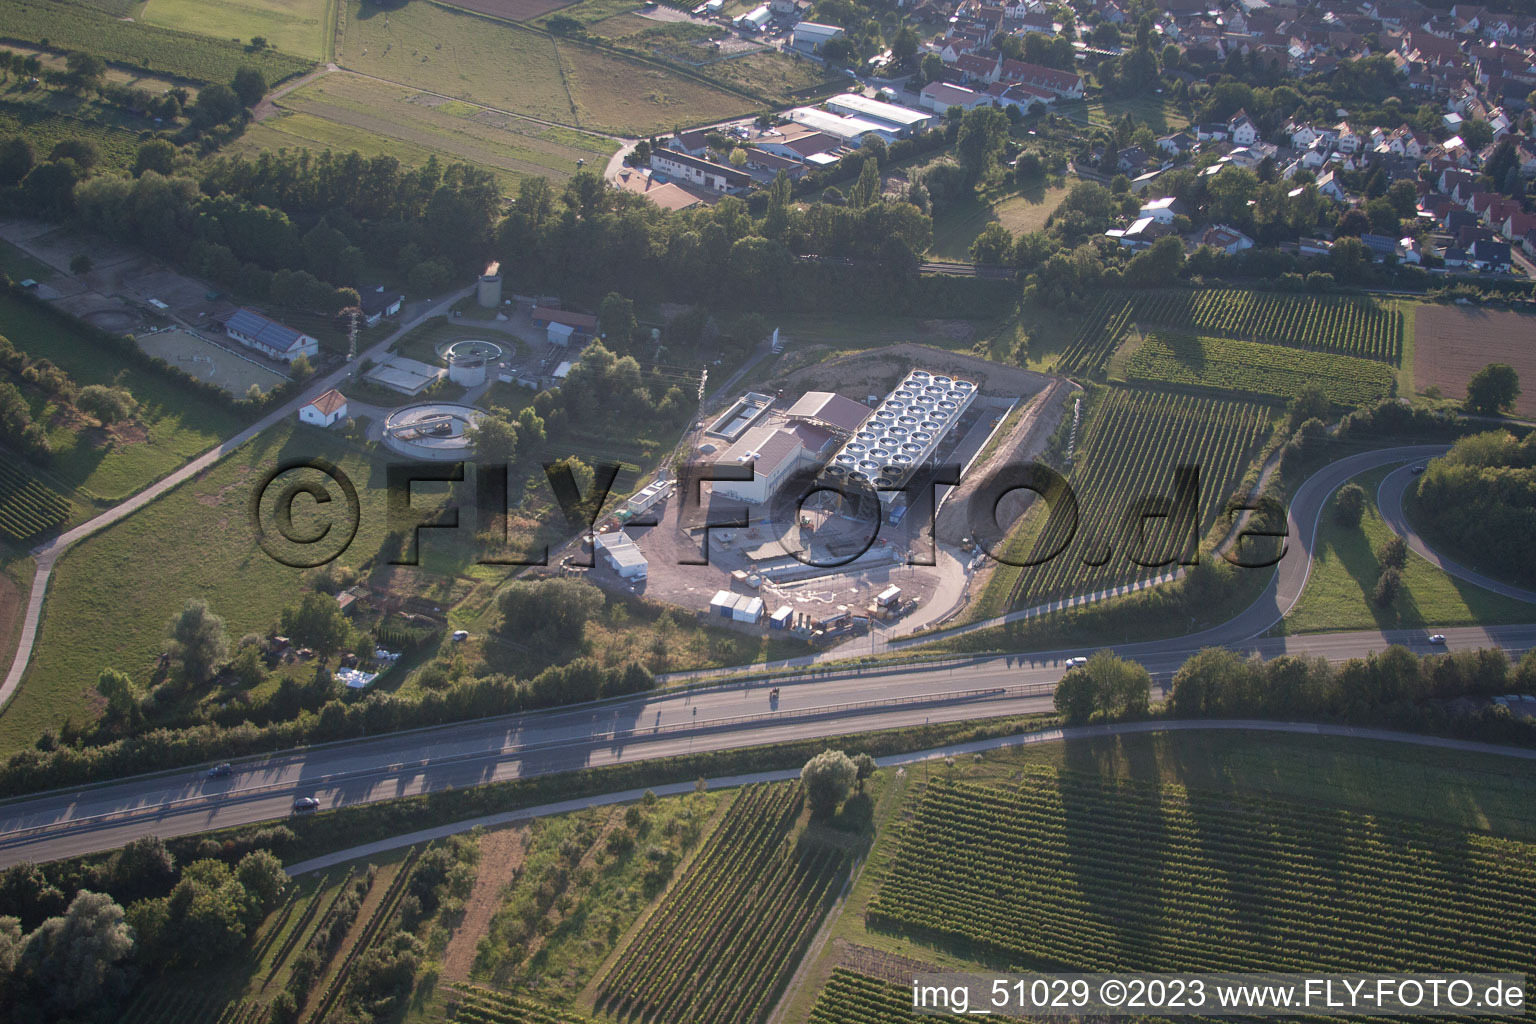 Geothermieanlage der Pfalzwerke geofuture GmbH bei Insheim an der A65 im Bundesland Rheinland-Pfalz, Deutschland aus der Luft betrachtet